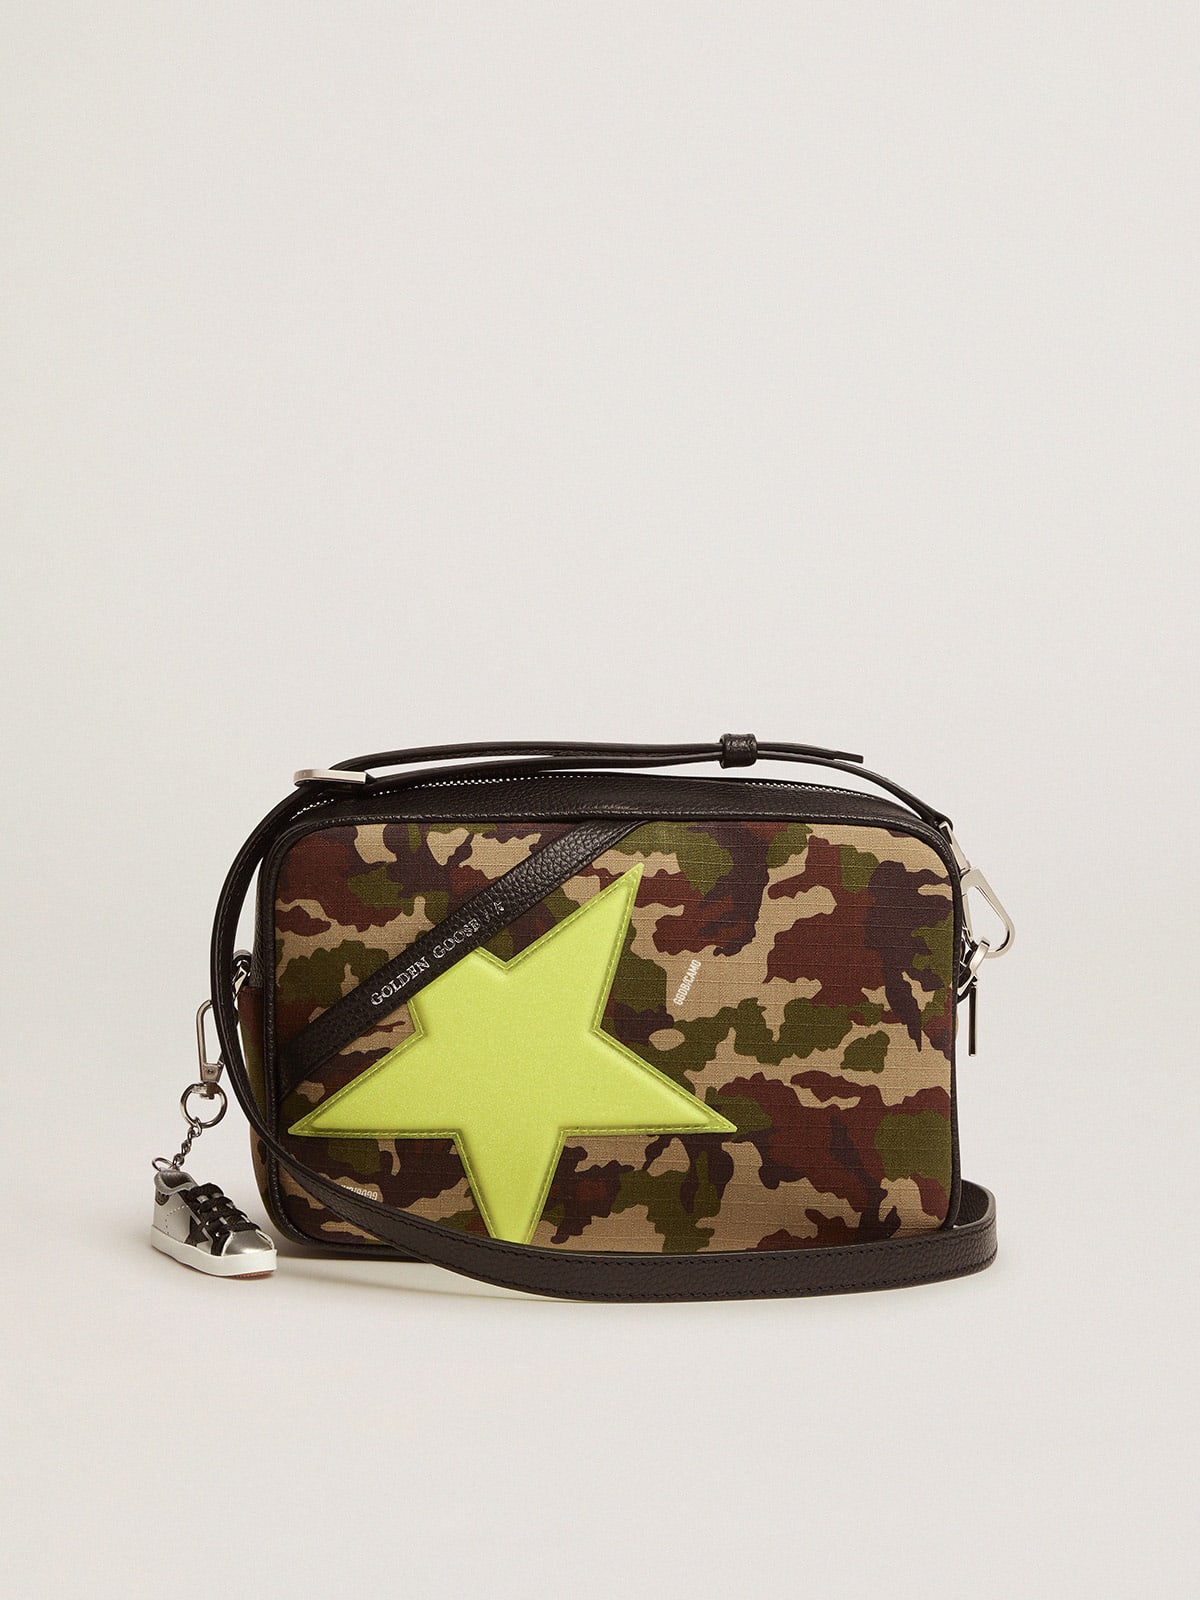 Golden Goose - Bolso Star Bag con estampado camuflaje y estrella Golden Goose amarillo flúor con minipurpurina iridiscente in 